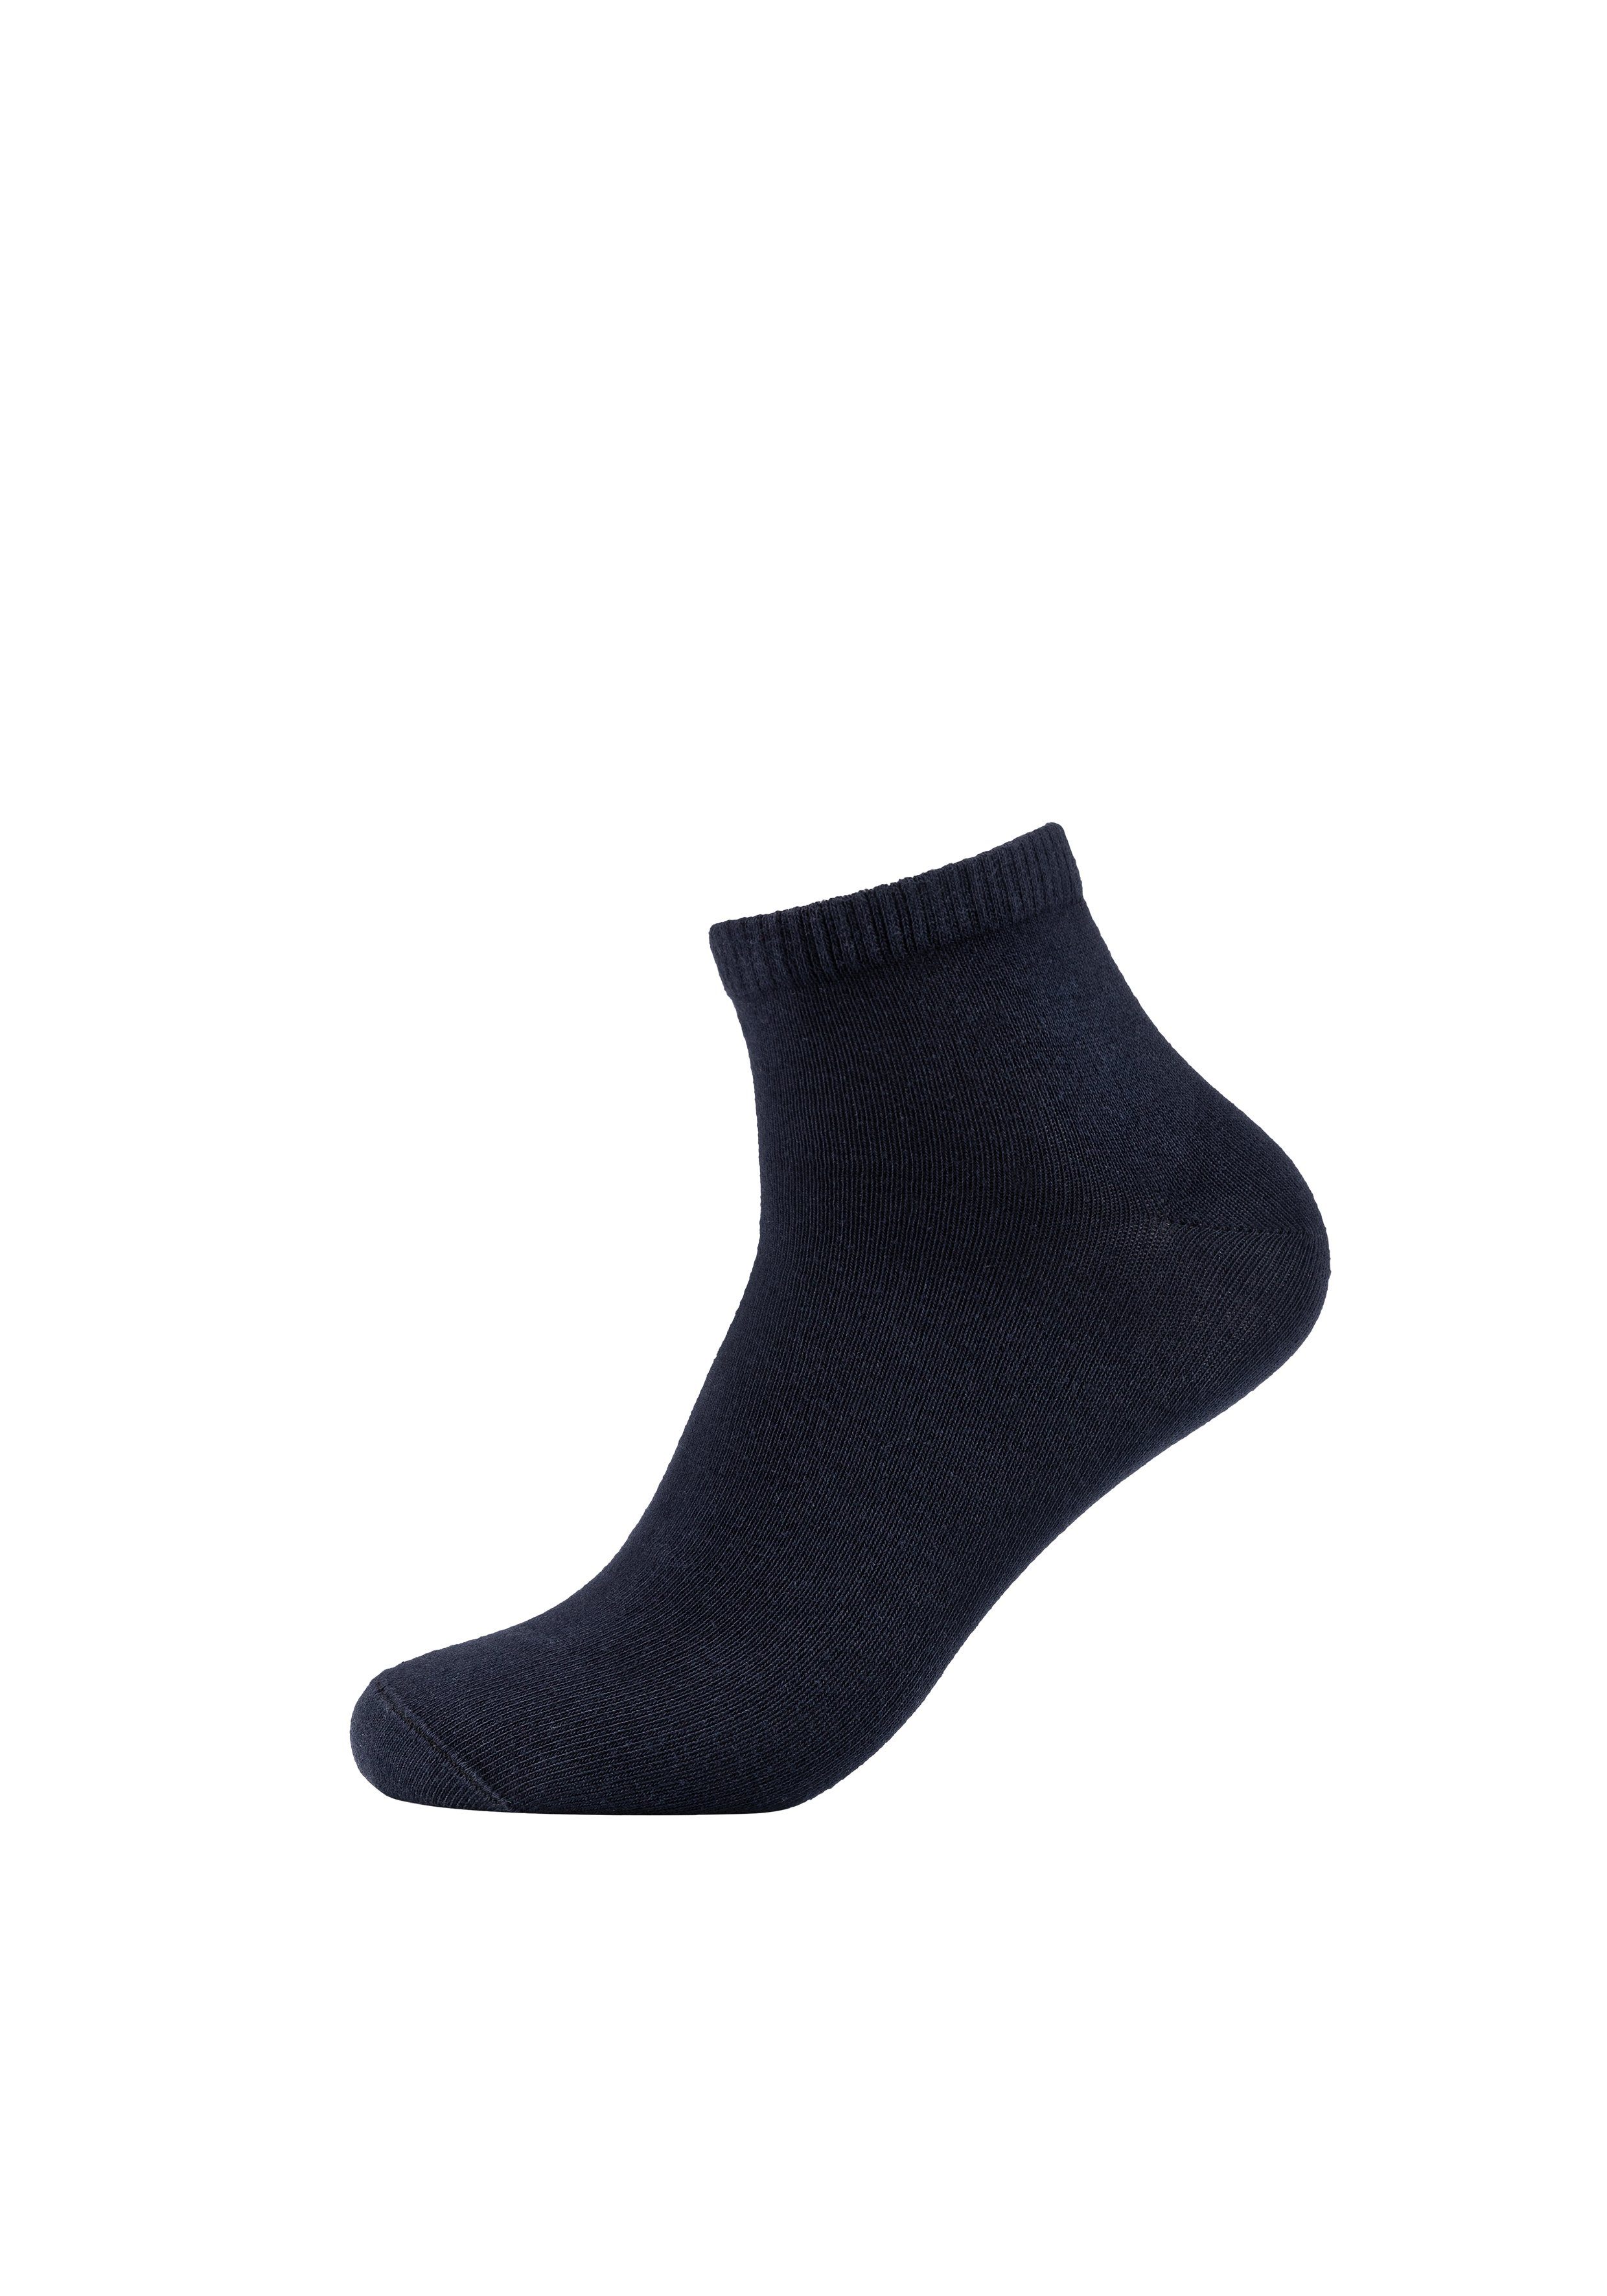 8er blau, (8-Paar) Essentials Pack Socken praktischen grau s.Oliver im